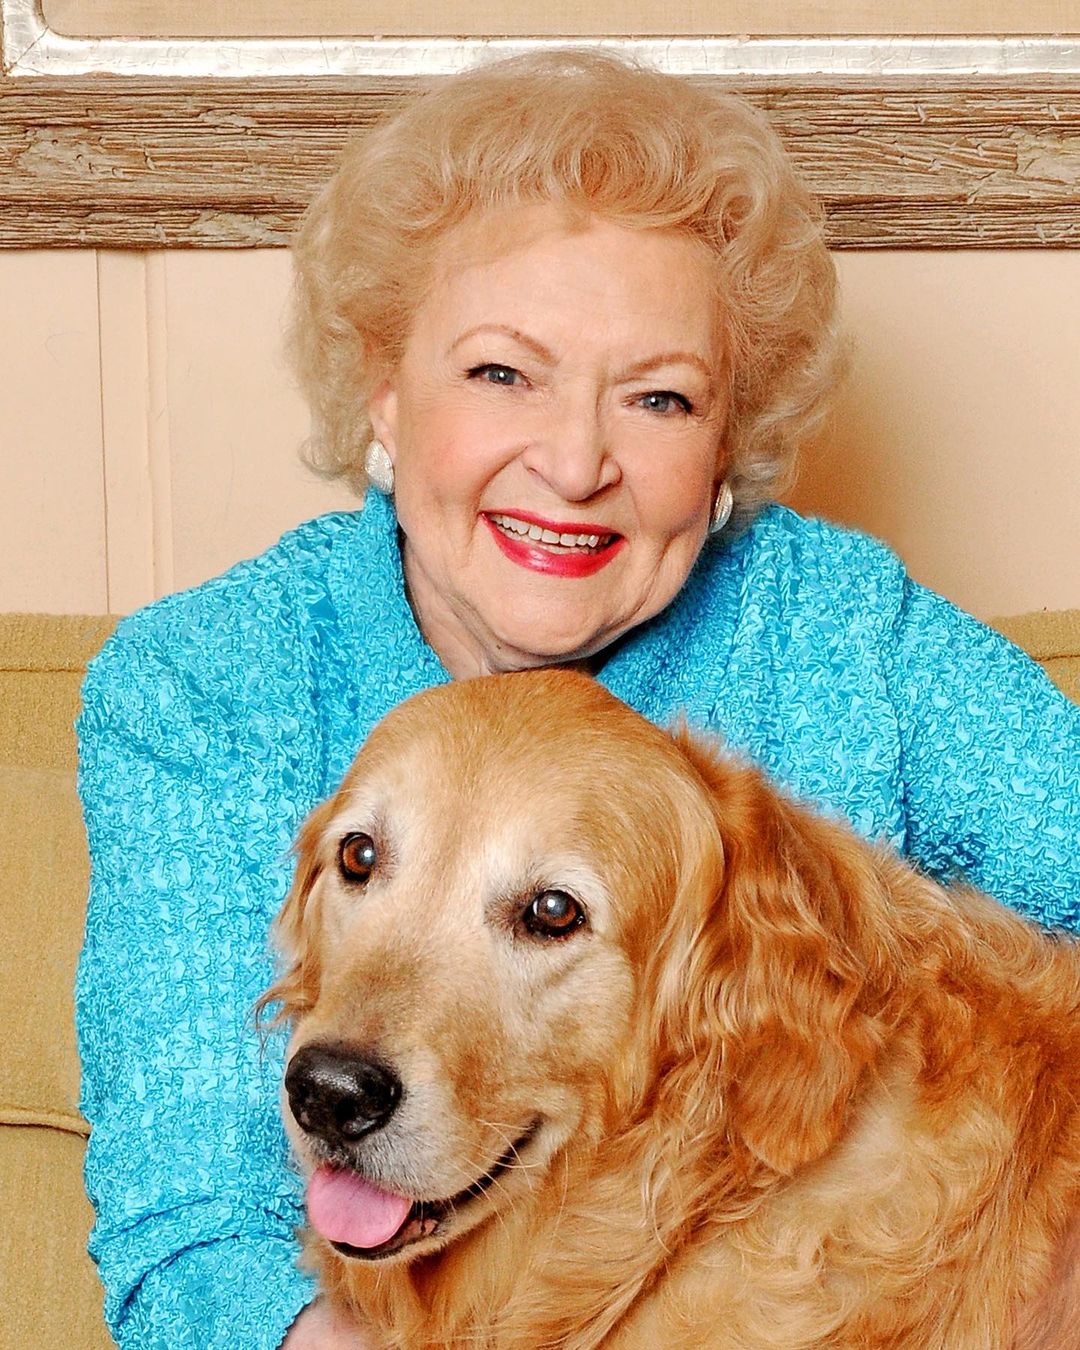 Betty White passed away in 2021